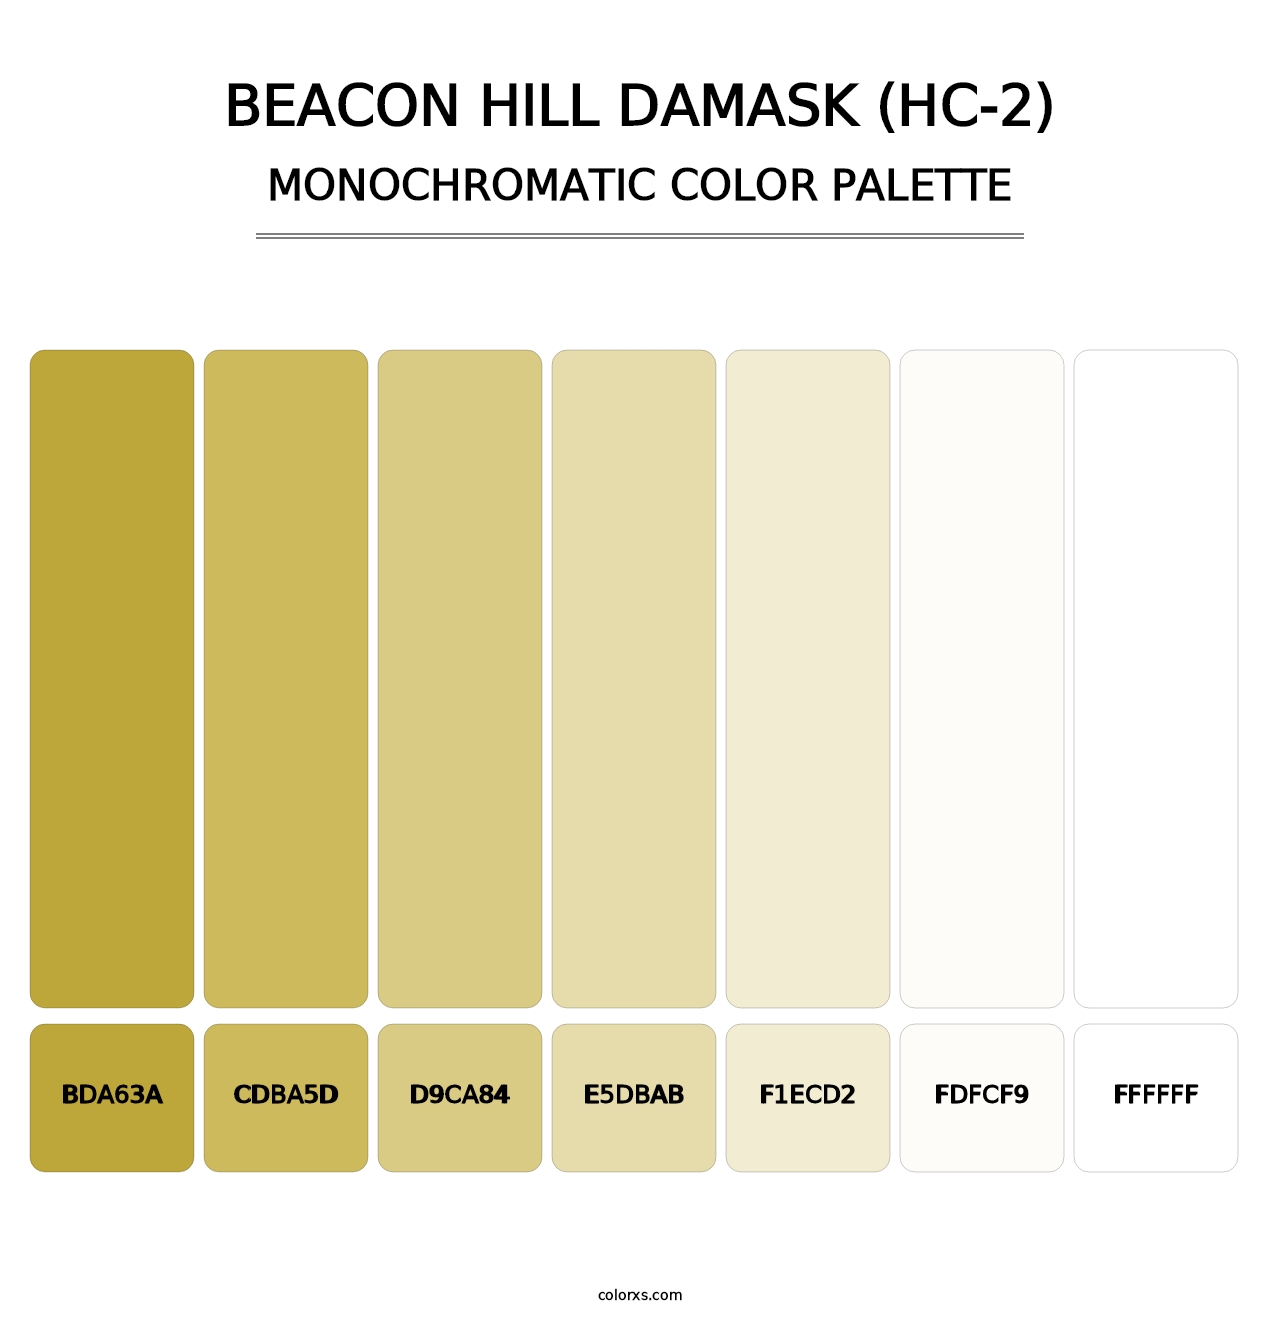 Beacon Hill Damask (HC-2) - Monochromatic Color Palette